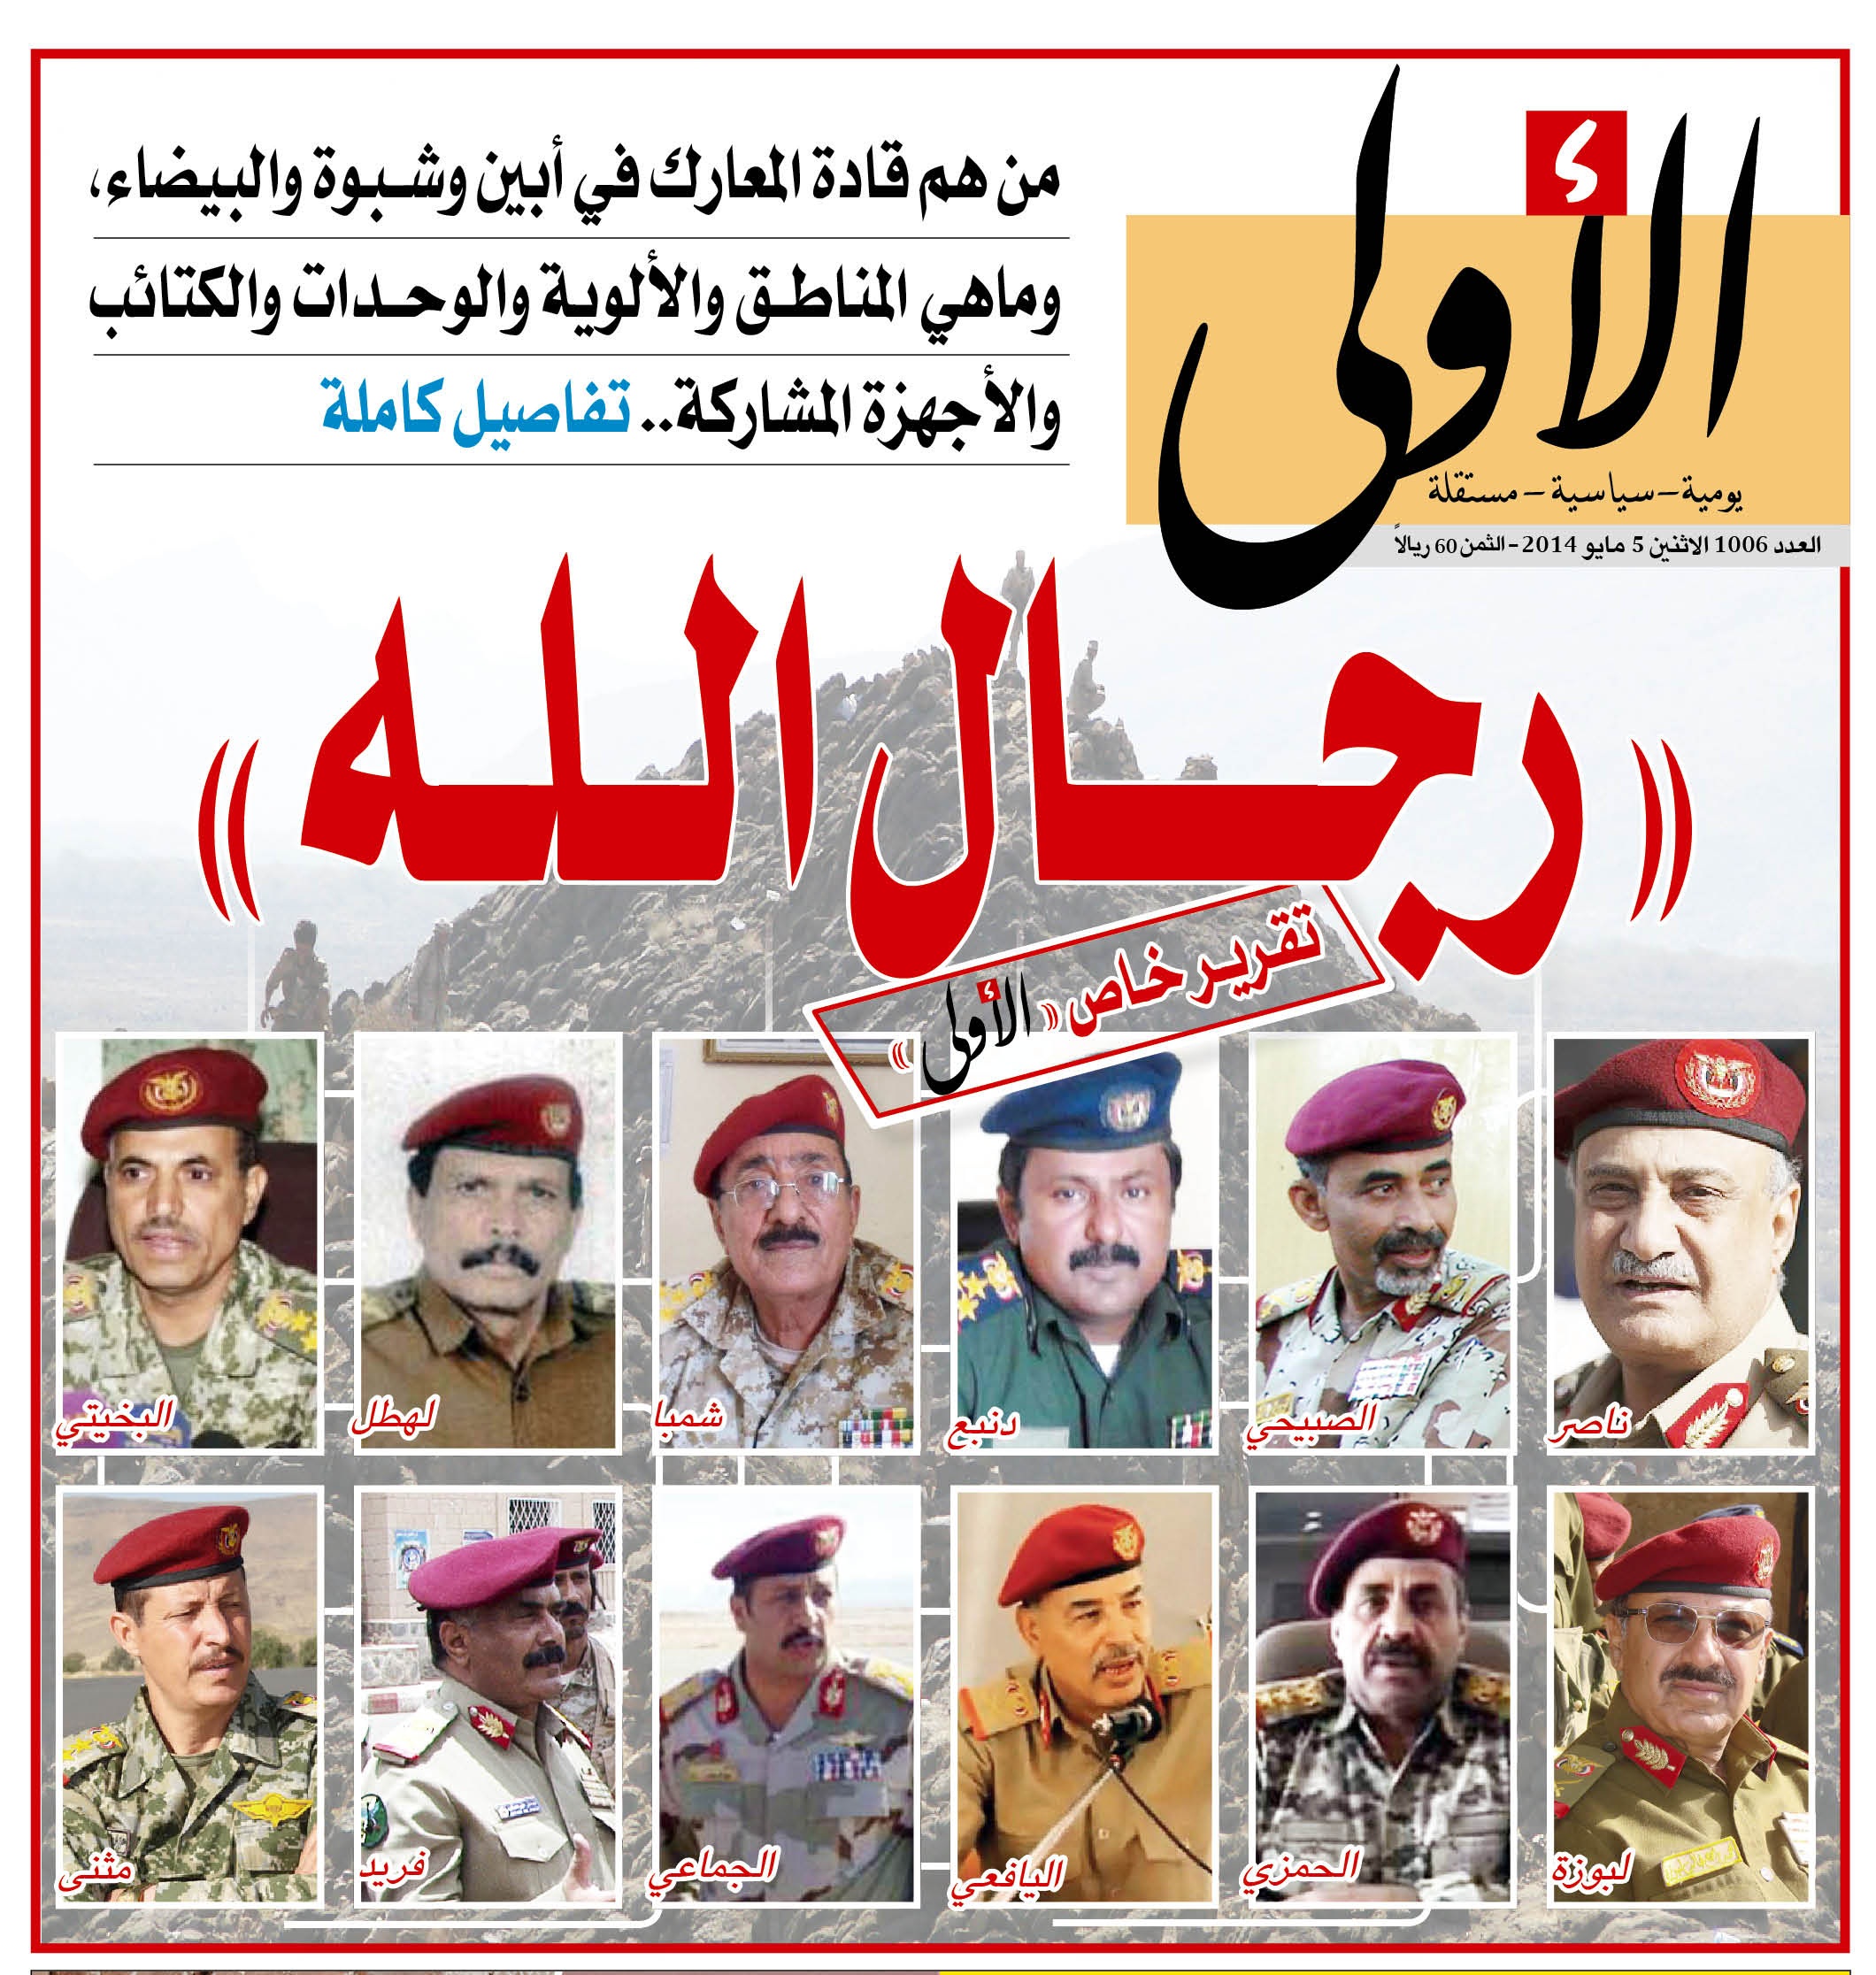 «الأولى» تنشر تقريراً مفصلاً عن قادة المعارك والألوية والوحدات المشاركة في الحملة العسكرية ضد القاعدة